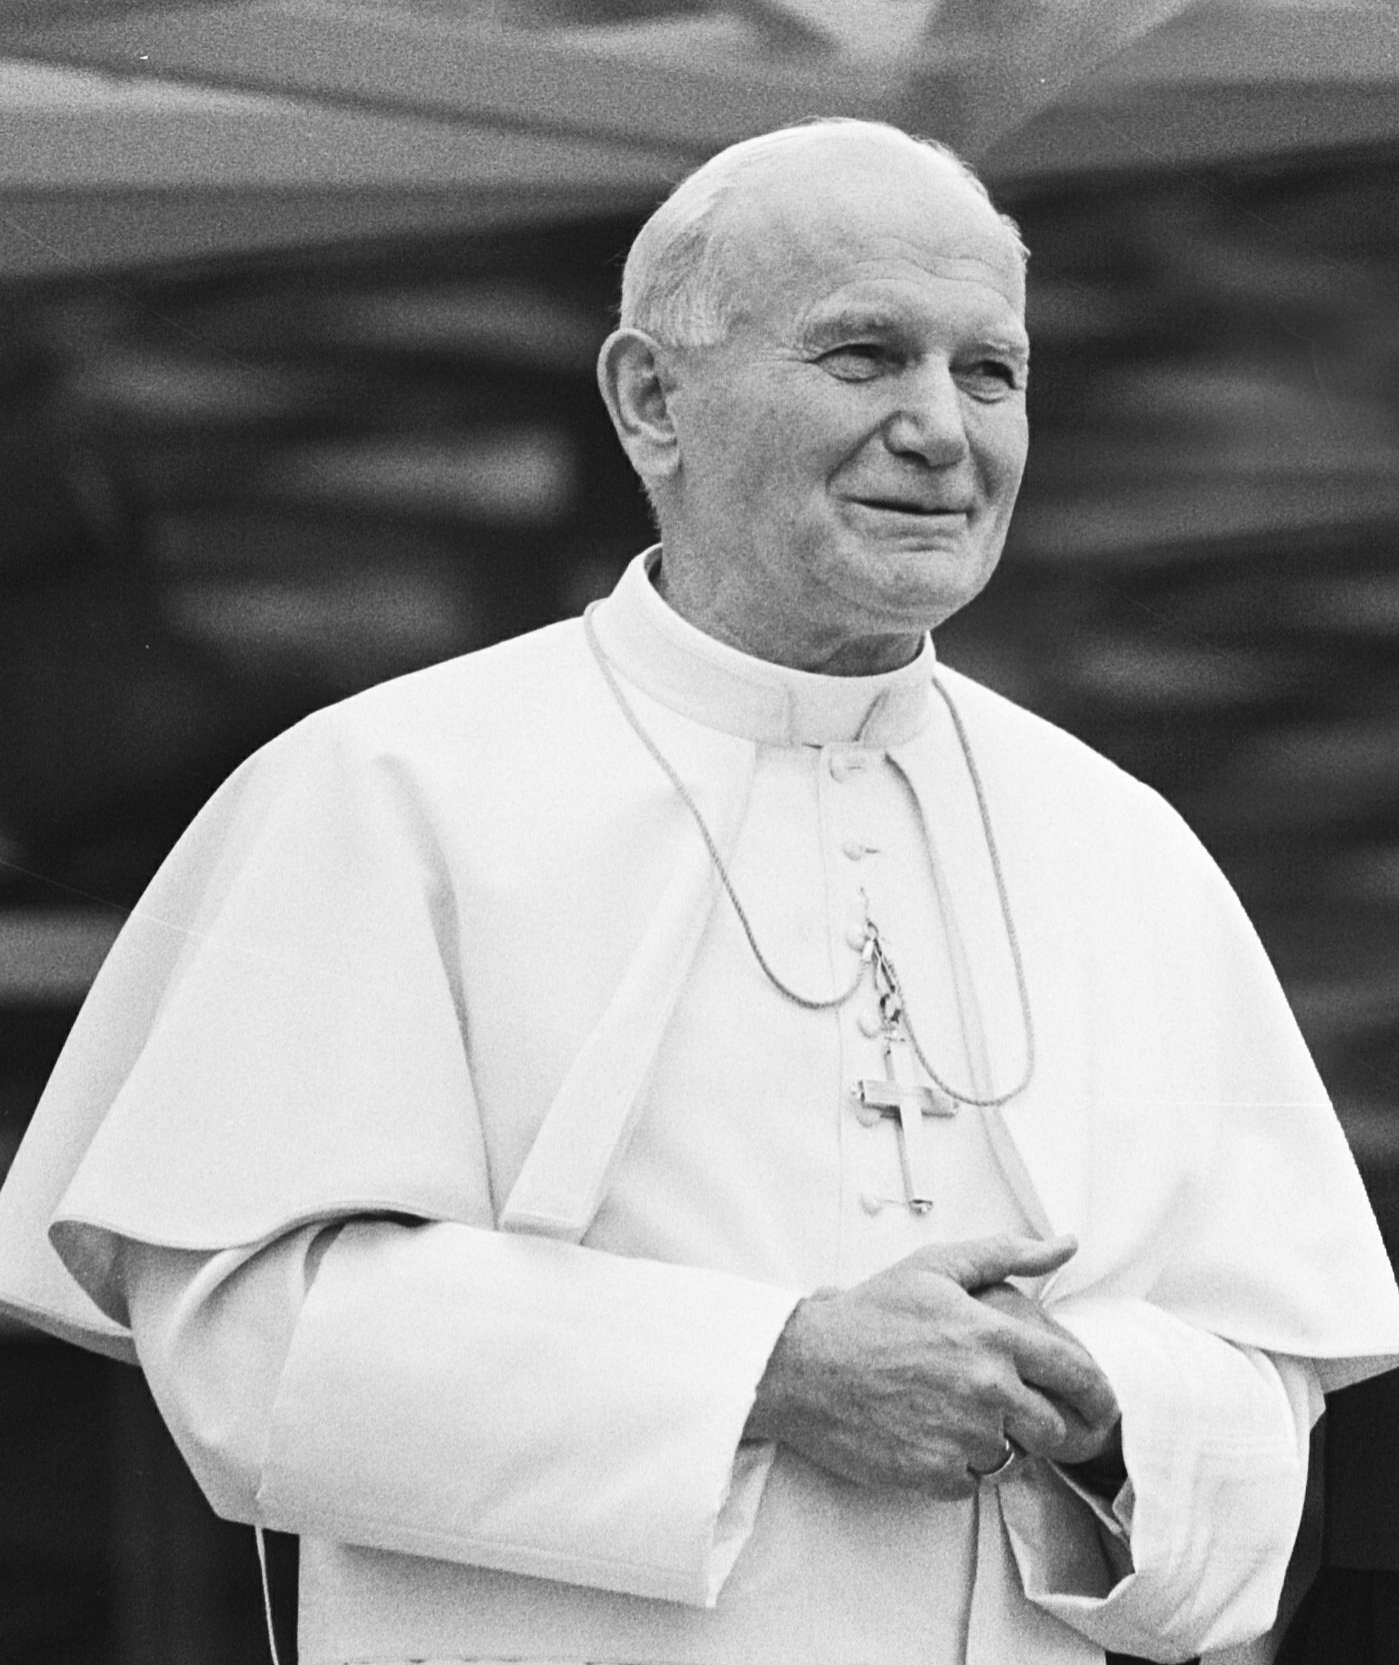 John Paul II biographer speaks on communist downfall in Europe